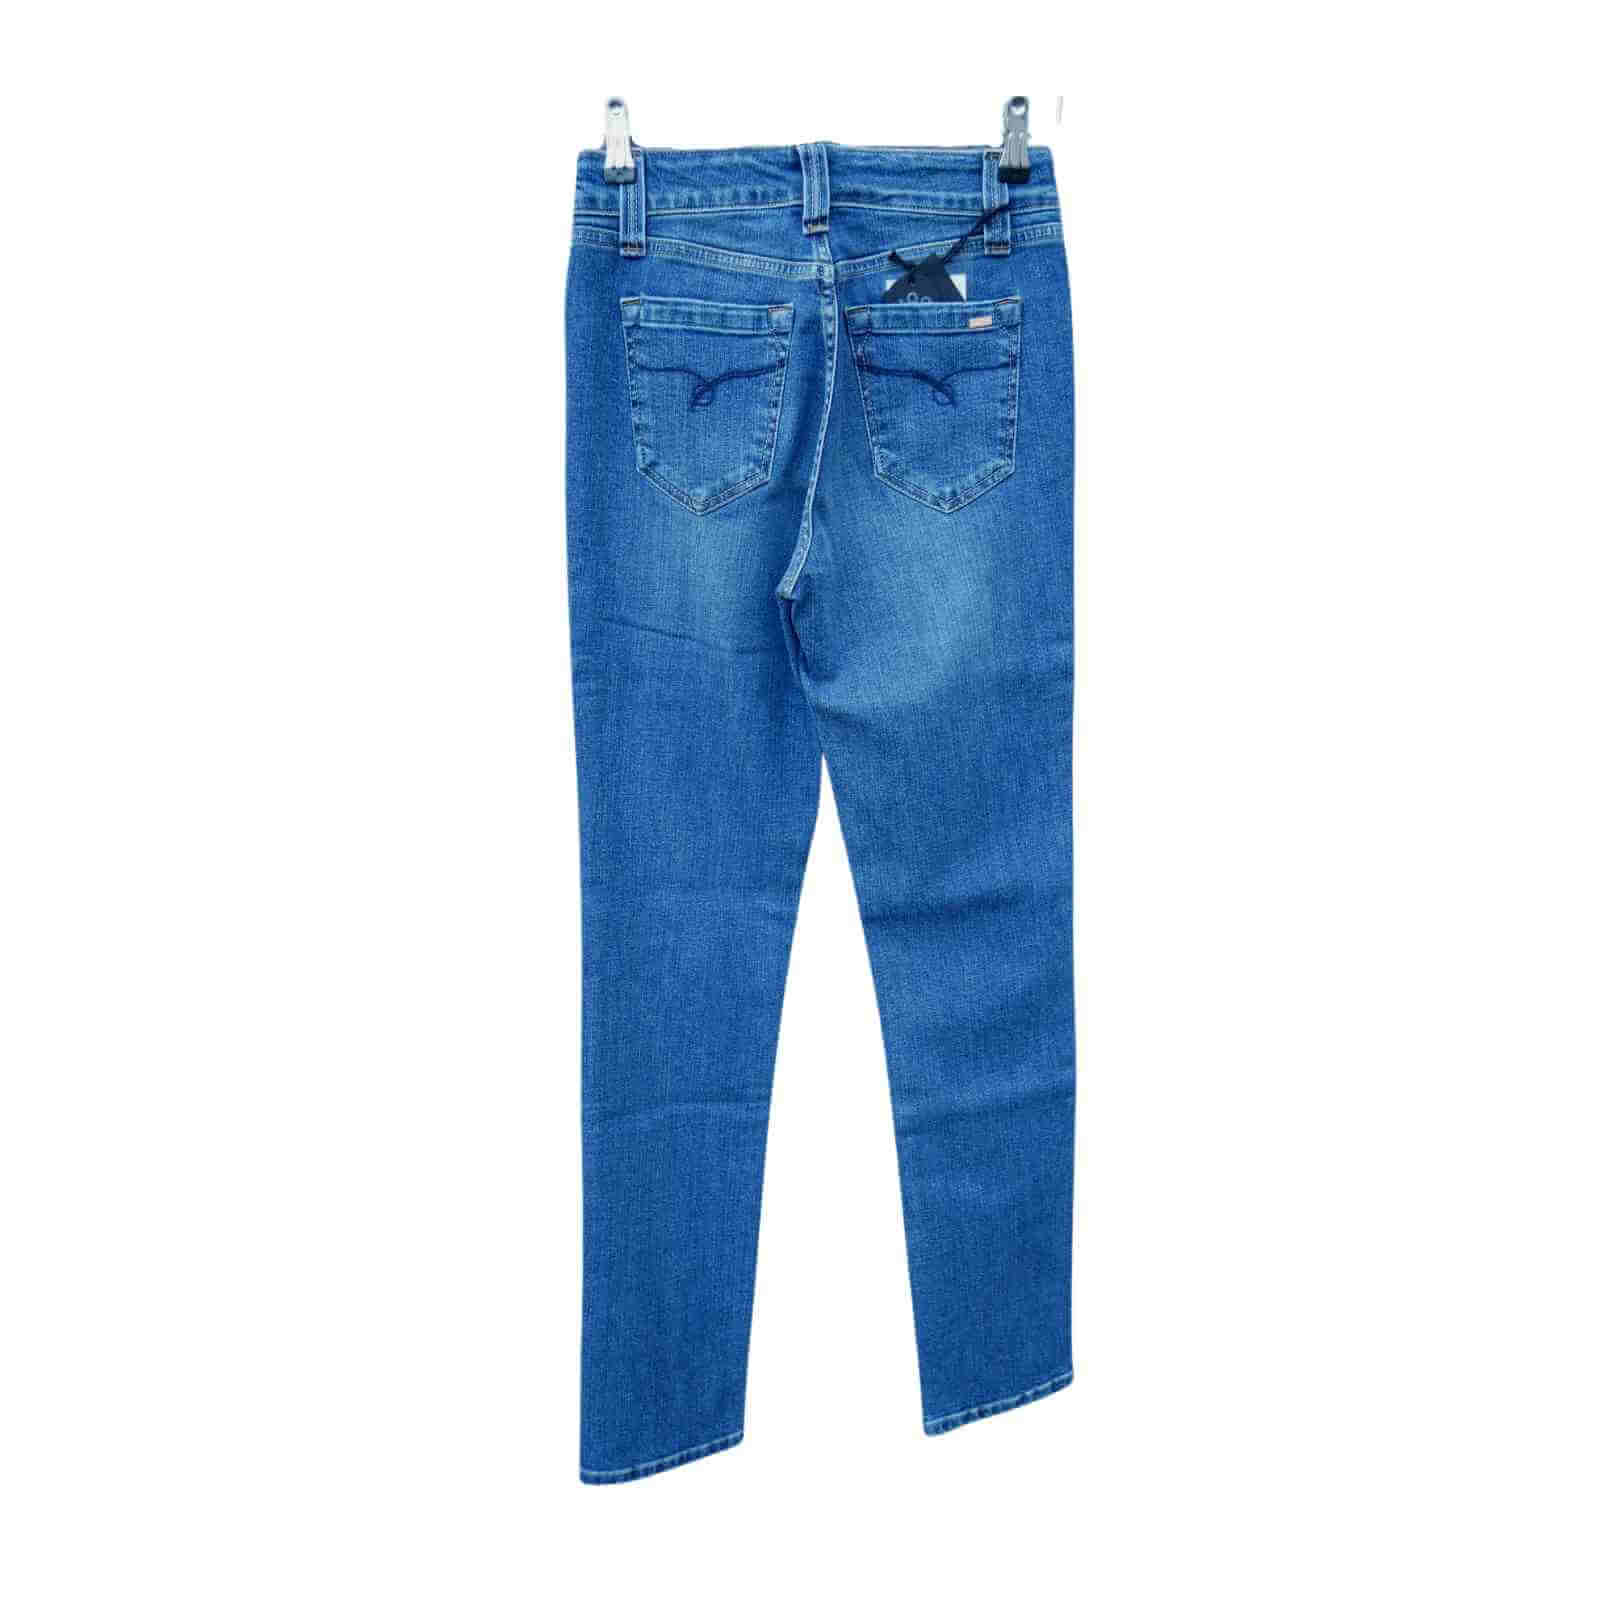 Klassiske Jonny Q jeans i model 682 bagfra i old vintage